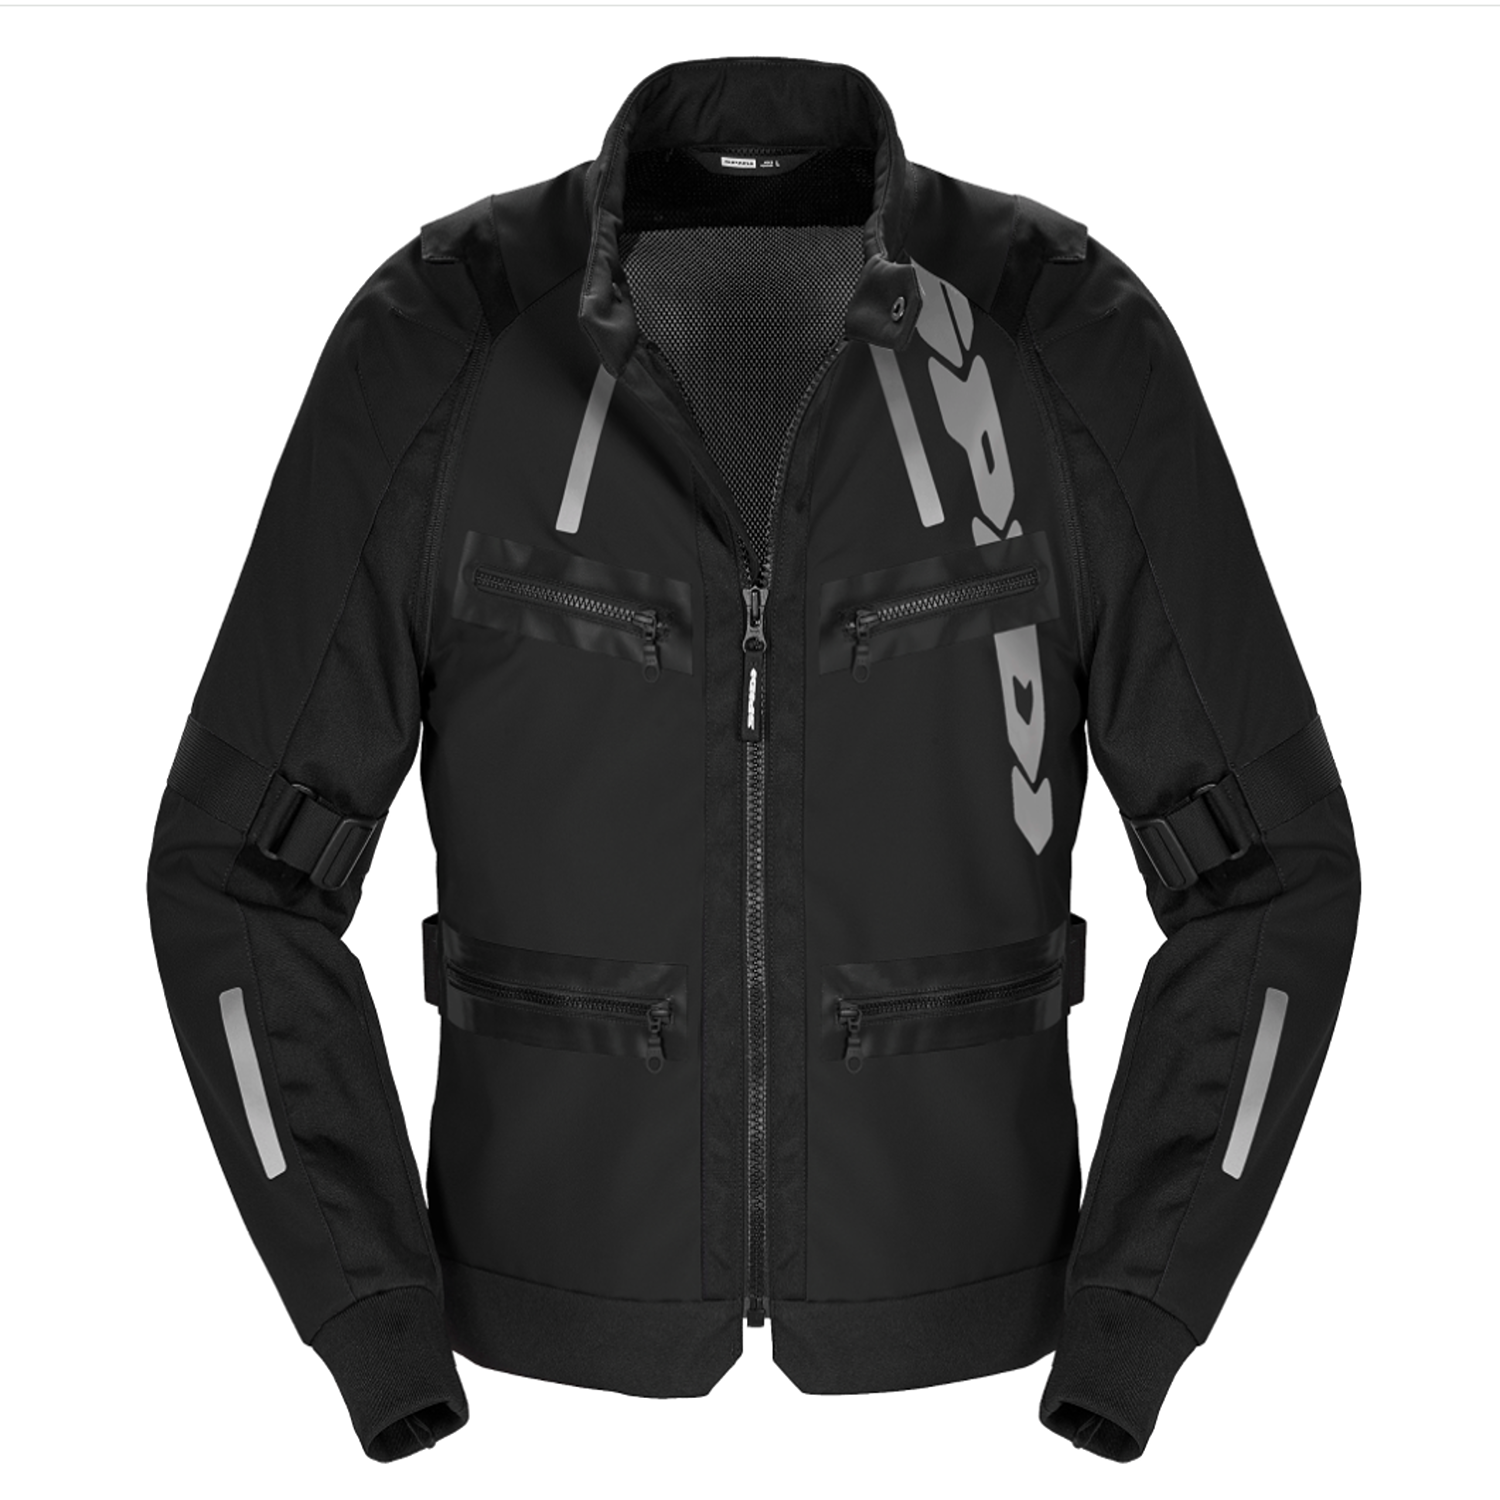 Image of EU Spidi Enduro Pro Jacket Black Taille 2XL